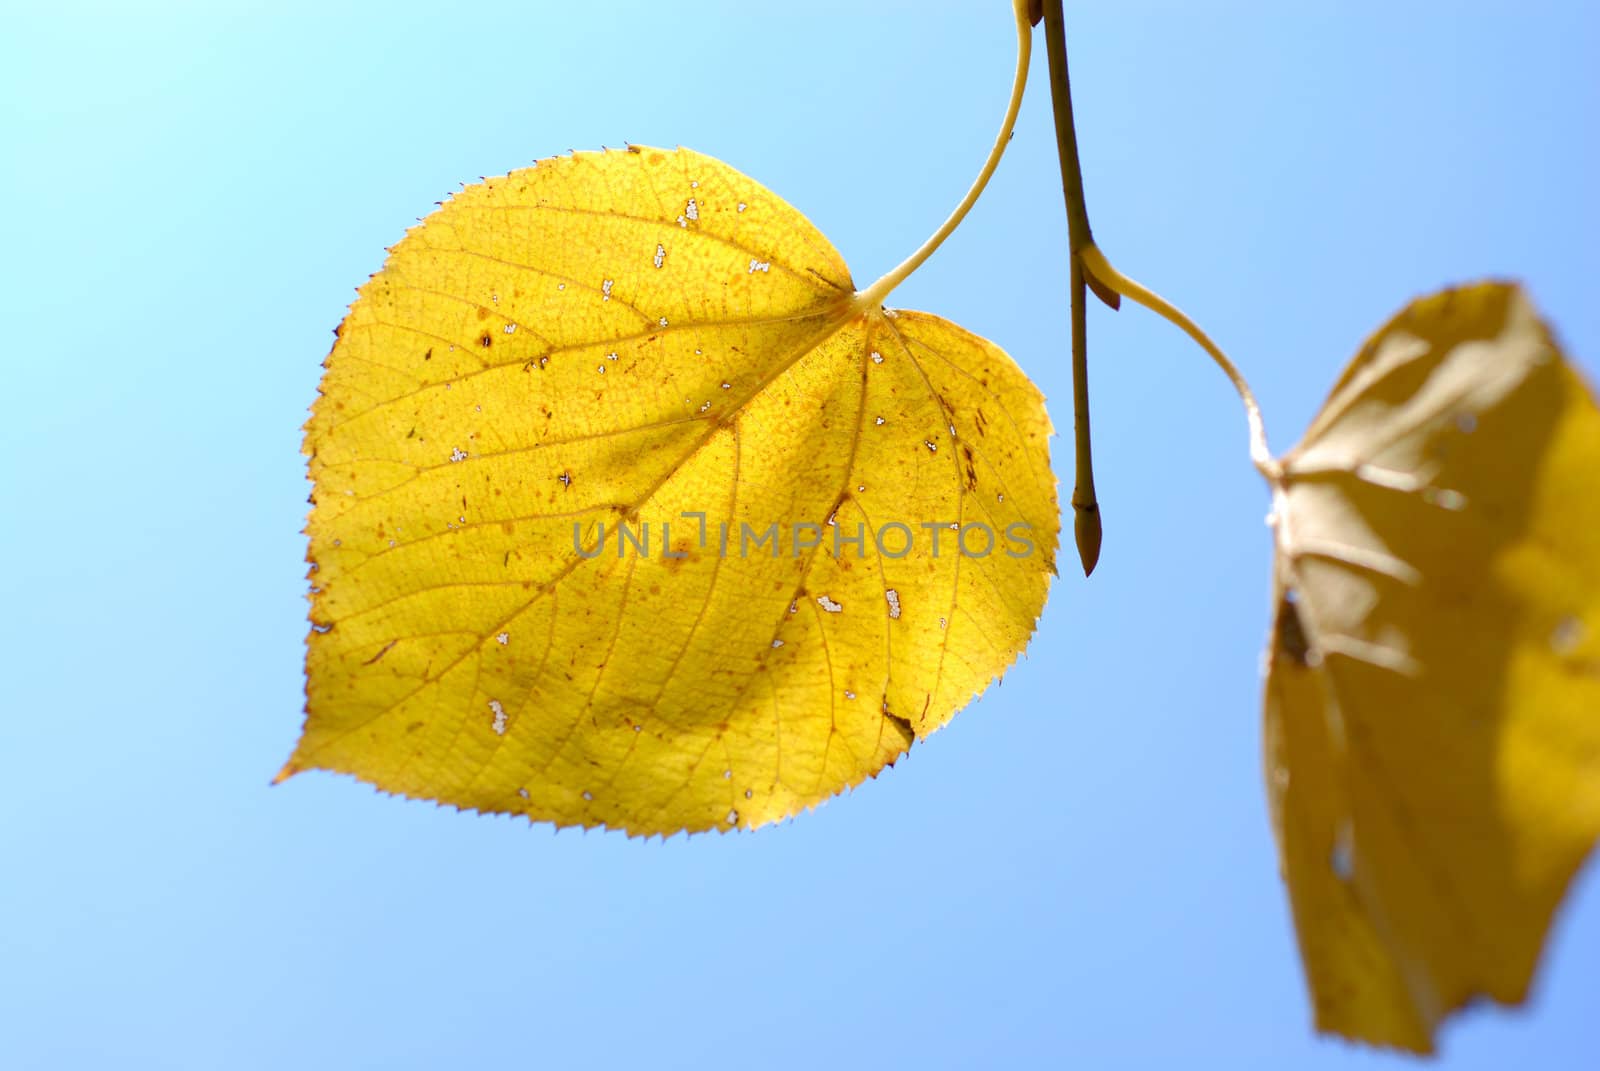 Autumn leaf on a blue sky. by wojciechkozlowski